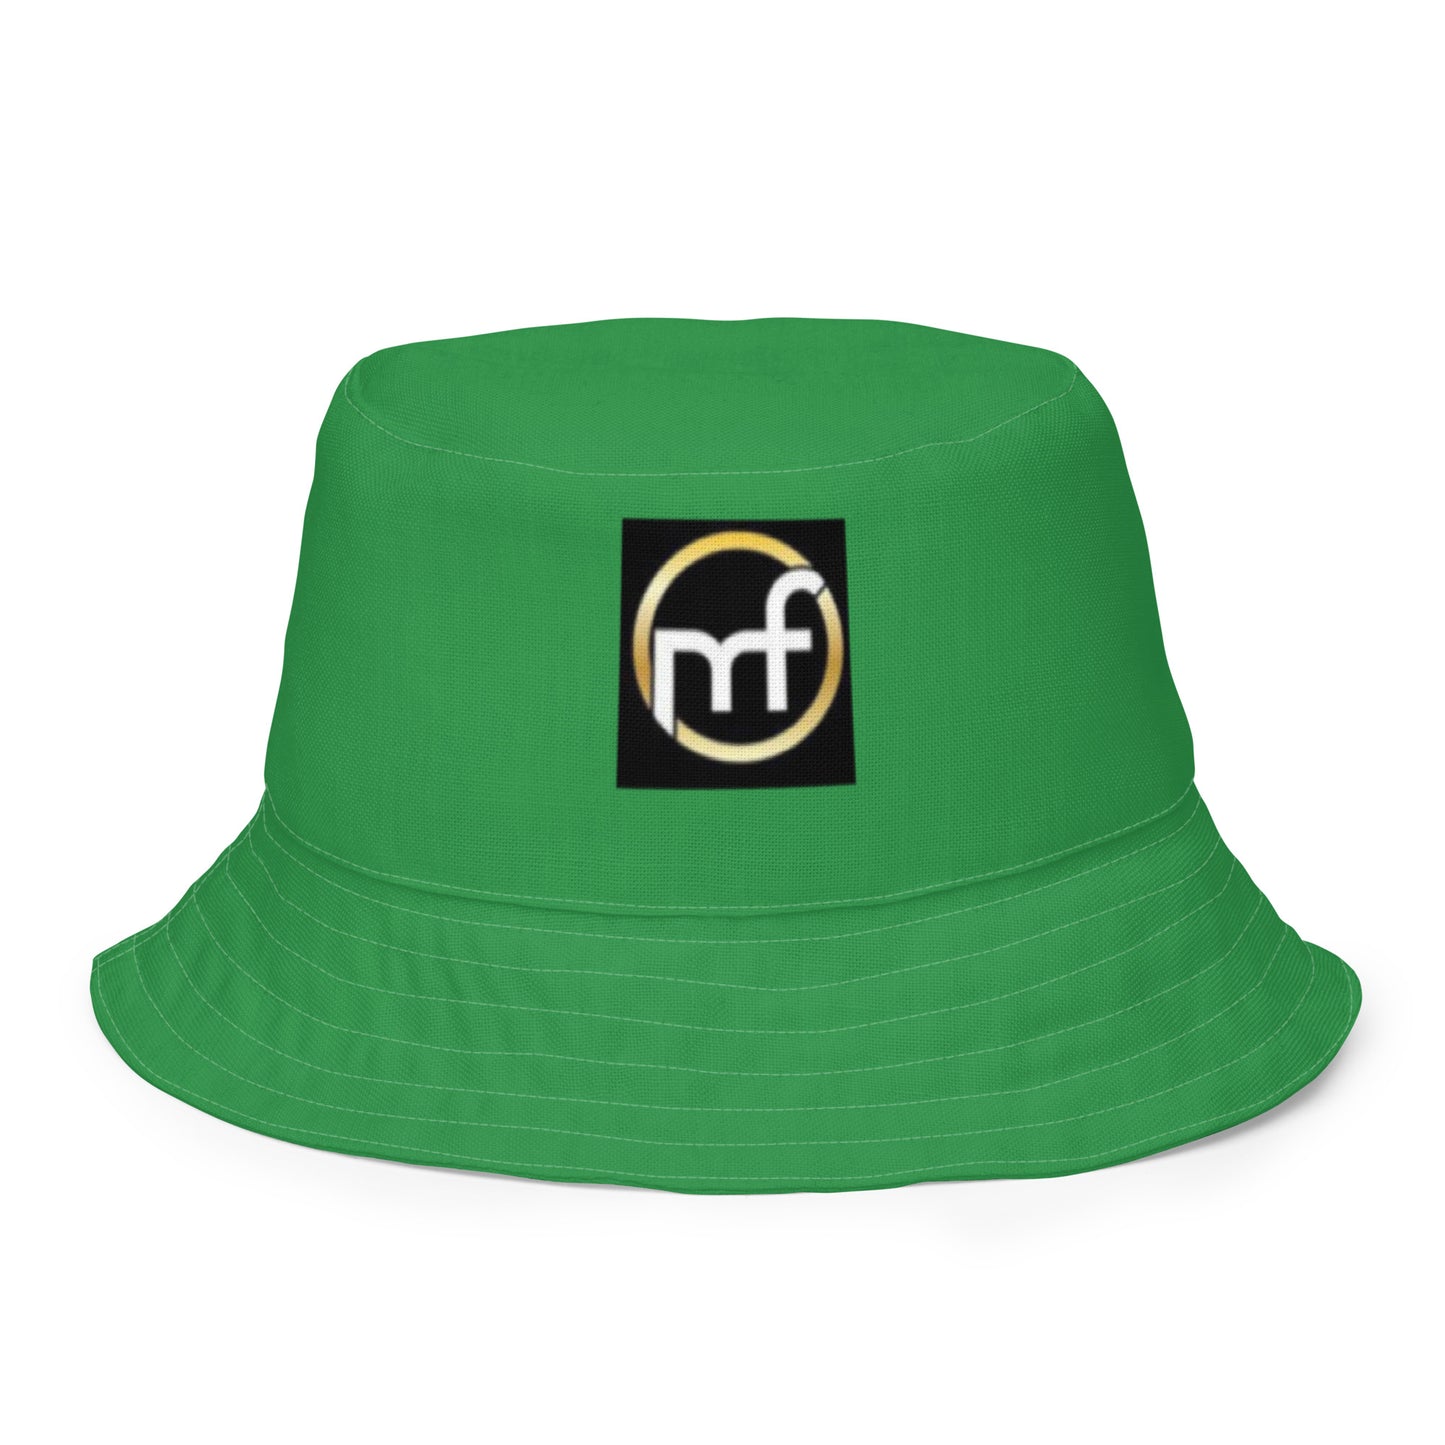 YCSWU bucket hat - green